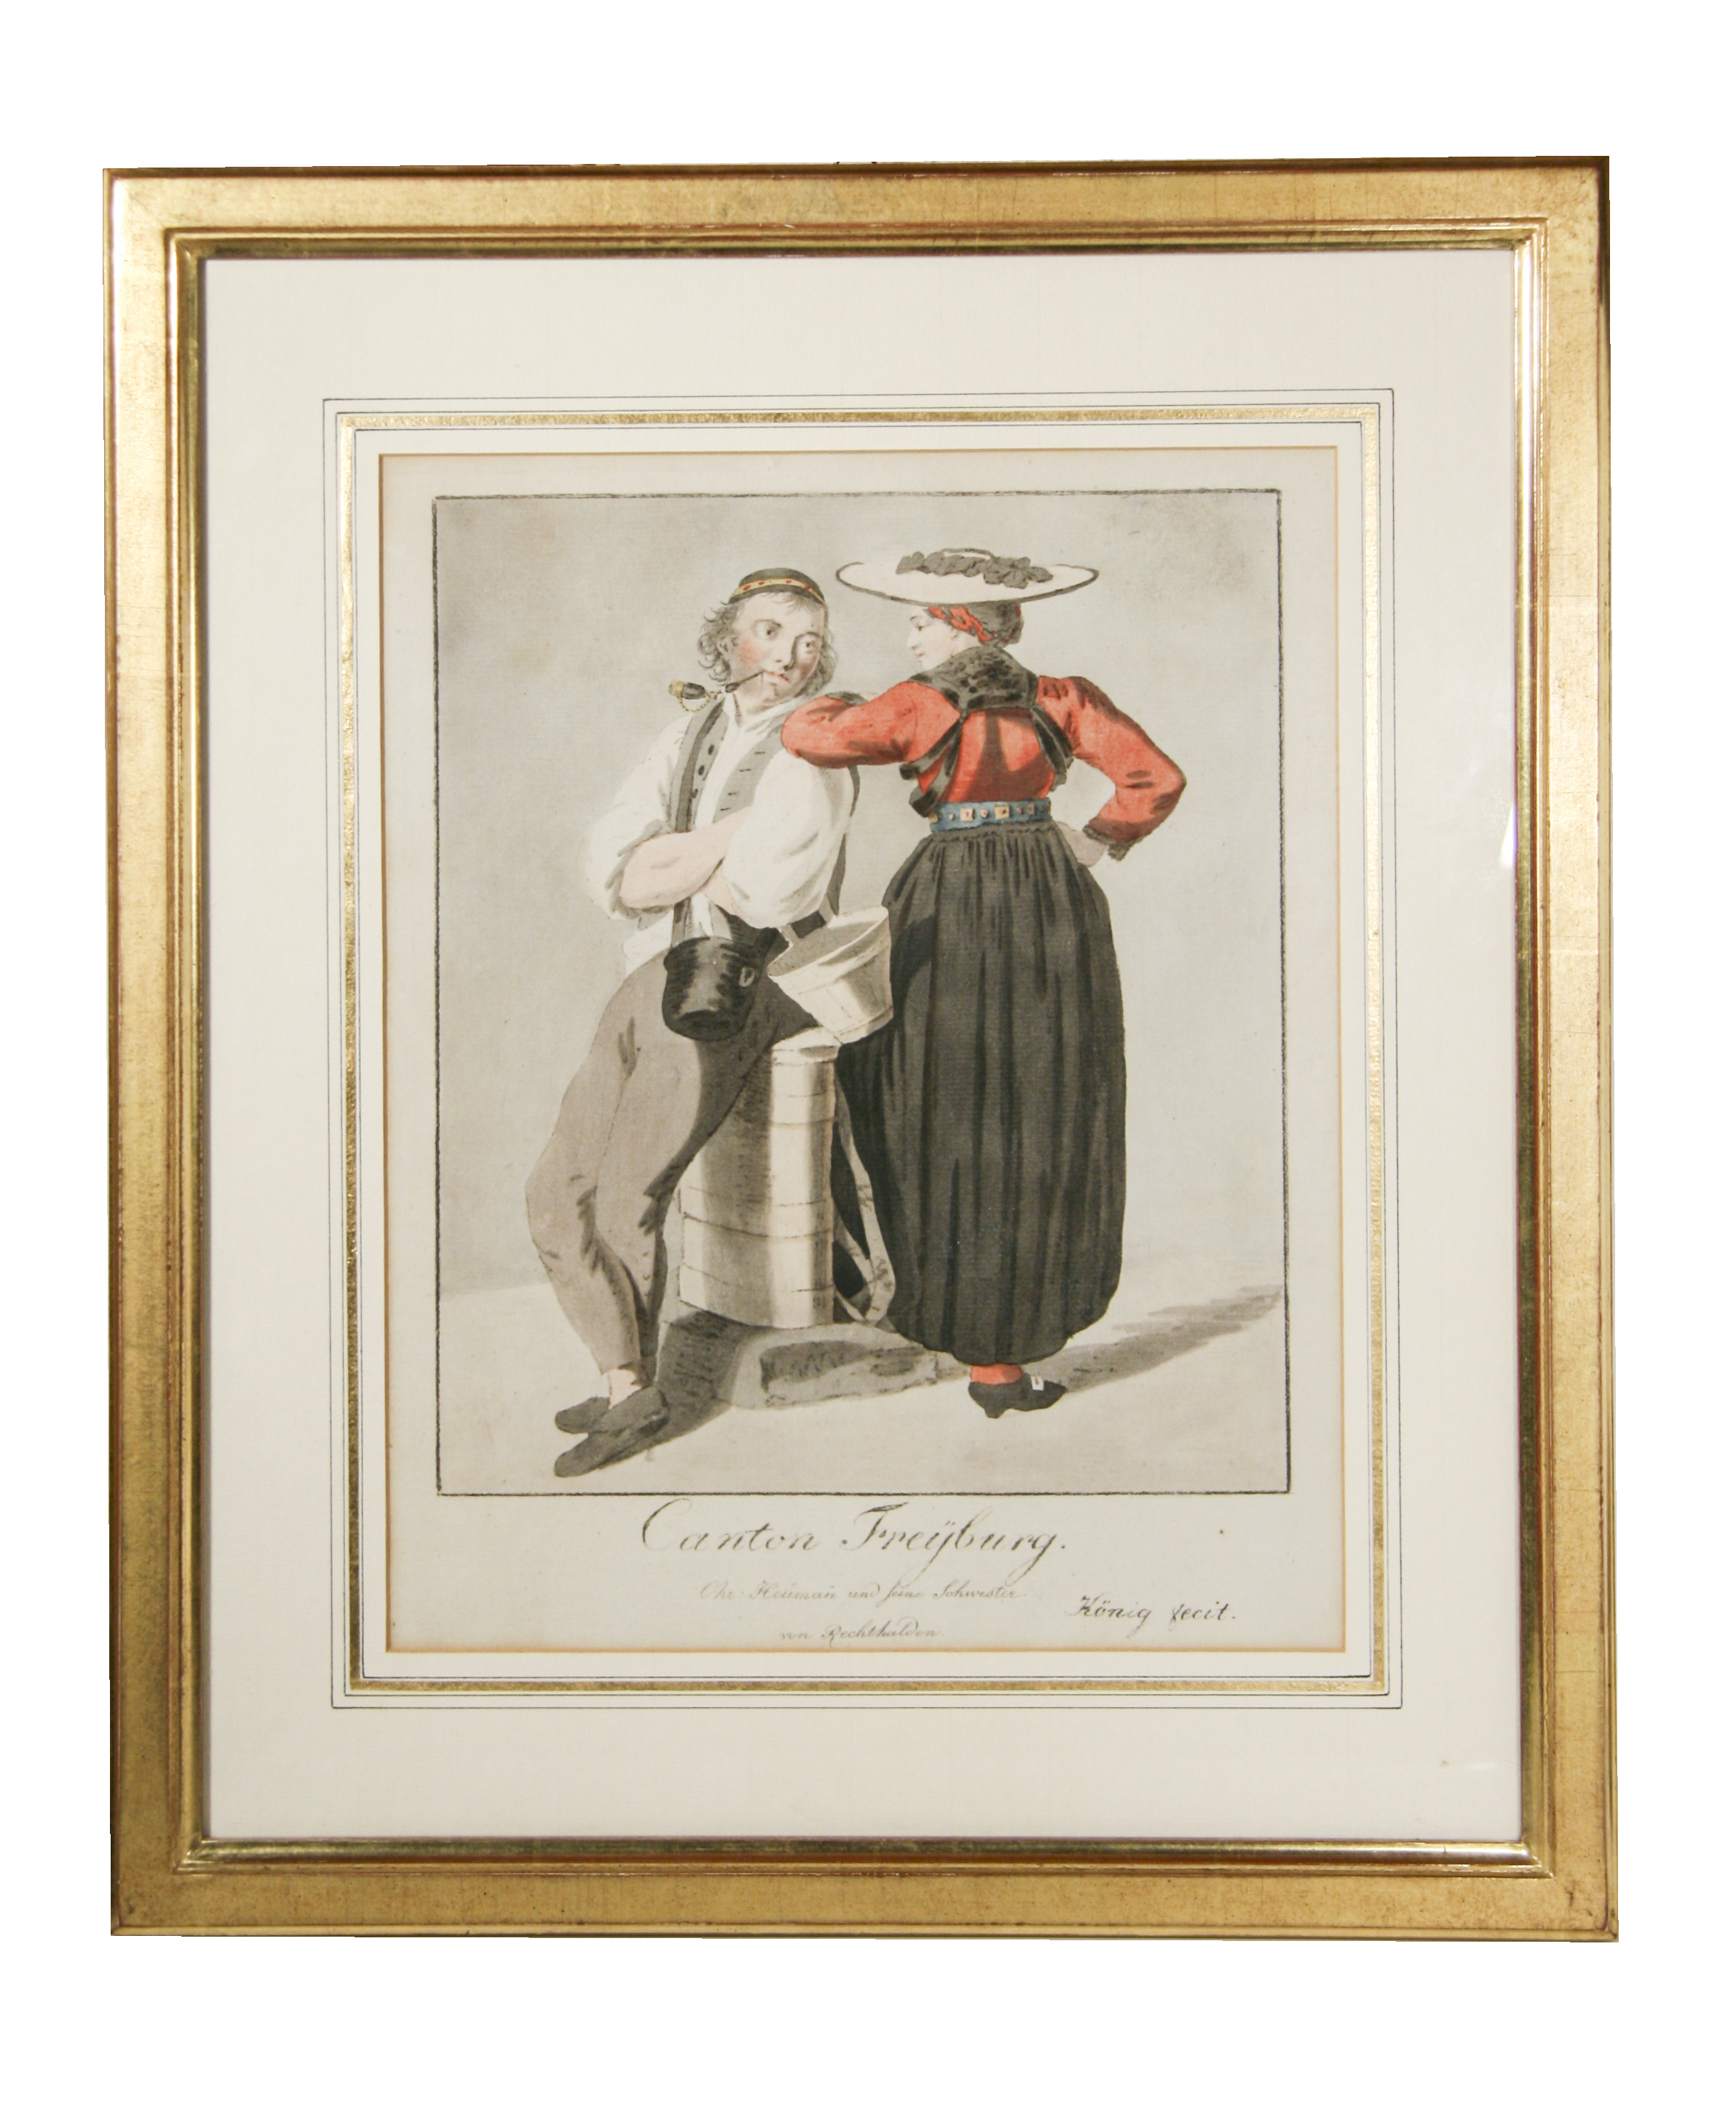 KNIG, F. N. (Franz-Niklaus) (Fecit): - Costume du Canton de Freijburg. Christian Hemann und seine Schwester von Rechthalten. (Blatt gross Format).